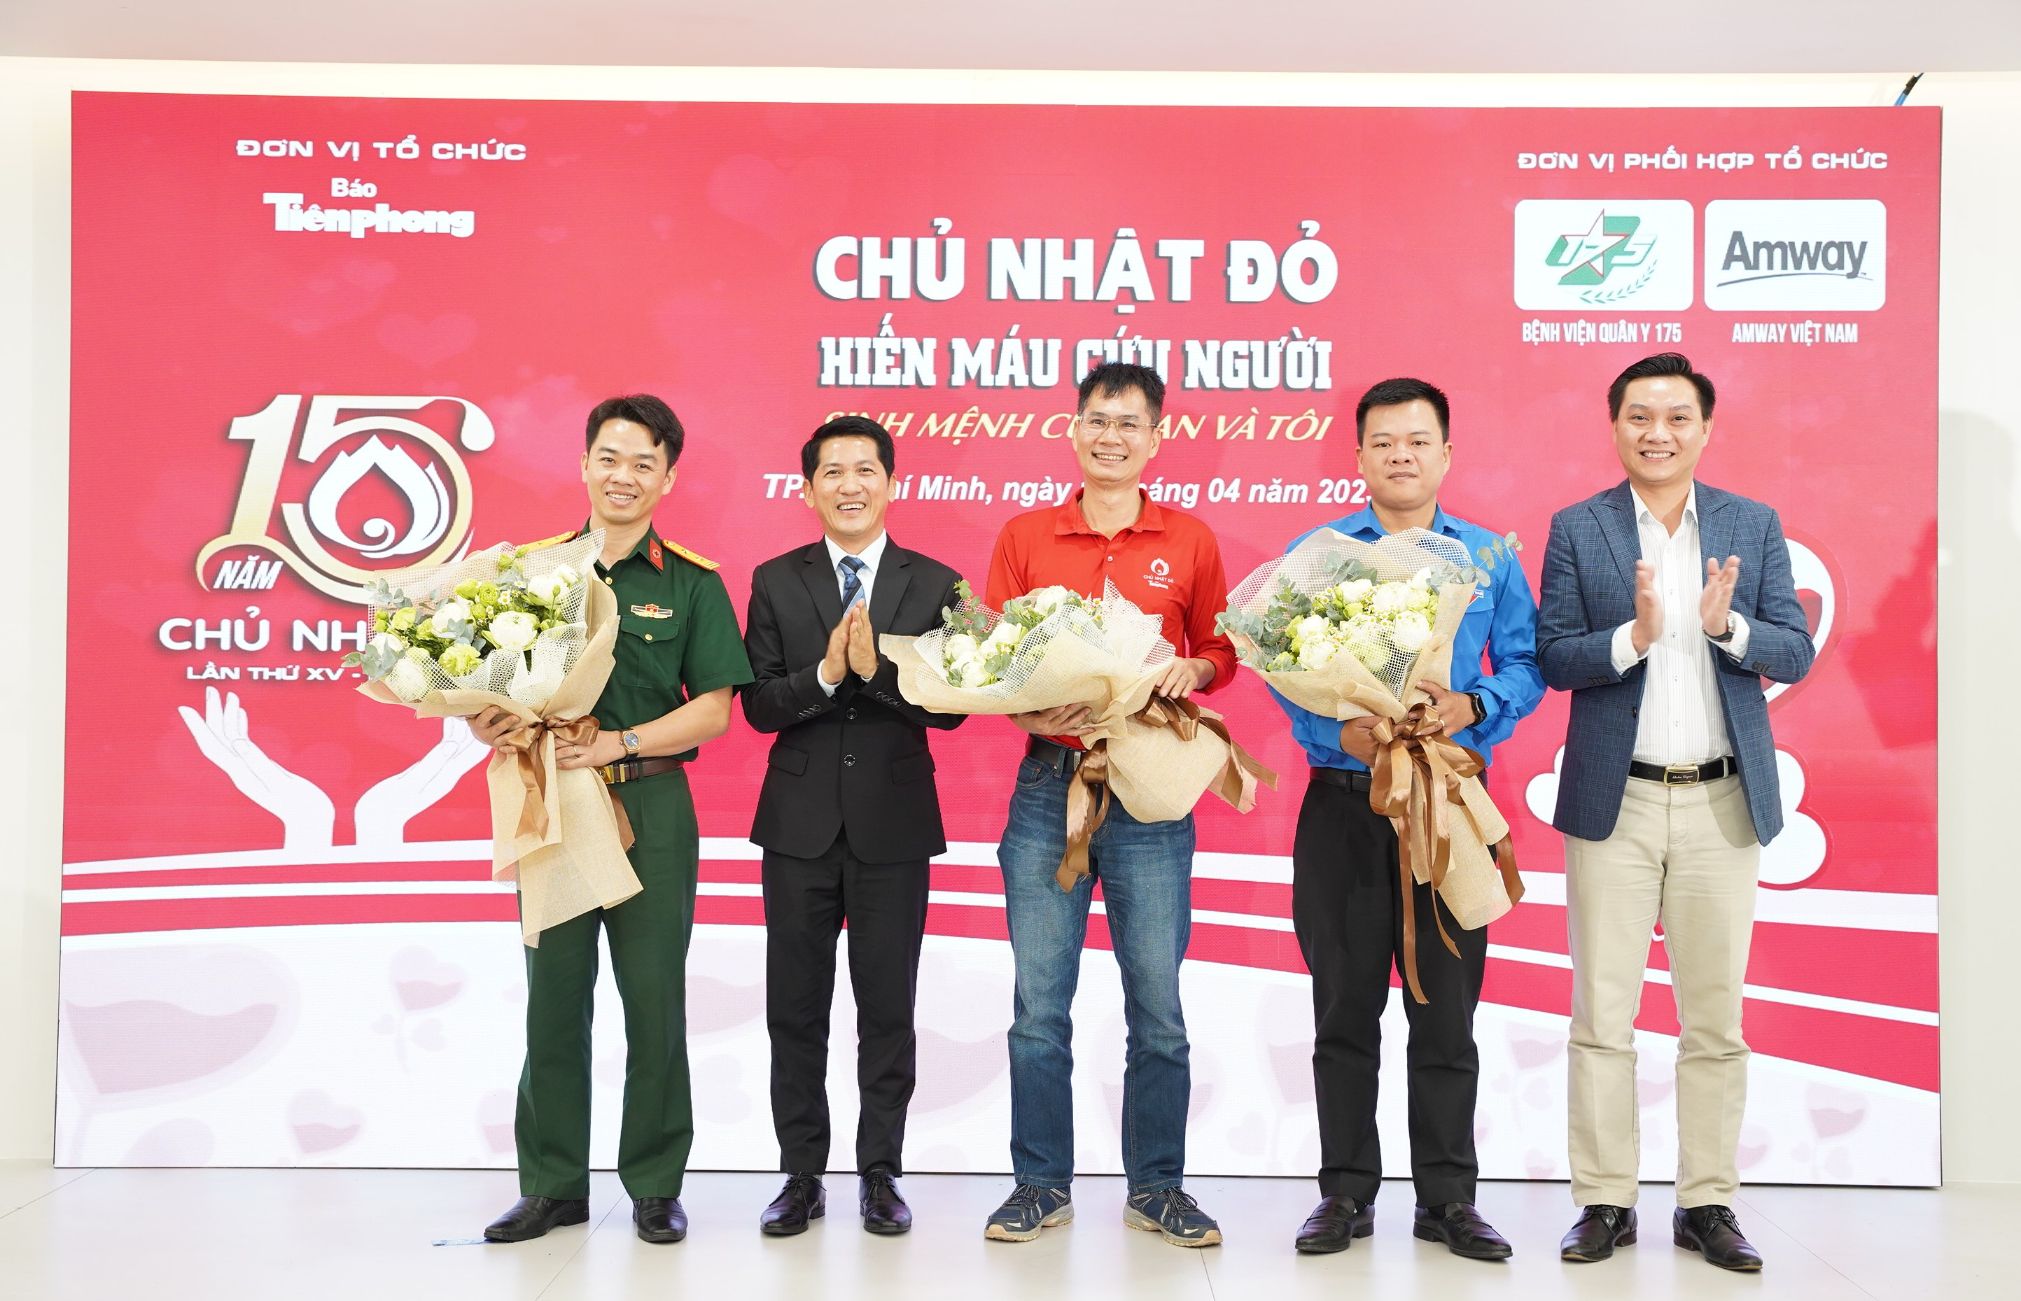 Đại diện Amway Việt Nam tặng hoa cám ơn các đối tác trong chương trình Chủ nhật Đỏ Amway Việt Nam nhận bằng khen từ Trung ương Đoàn Thanh niên Cộng sản Hồ Chí Minh